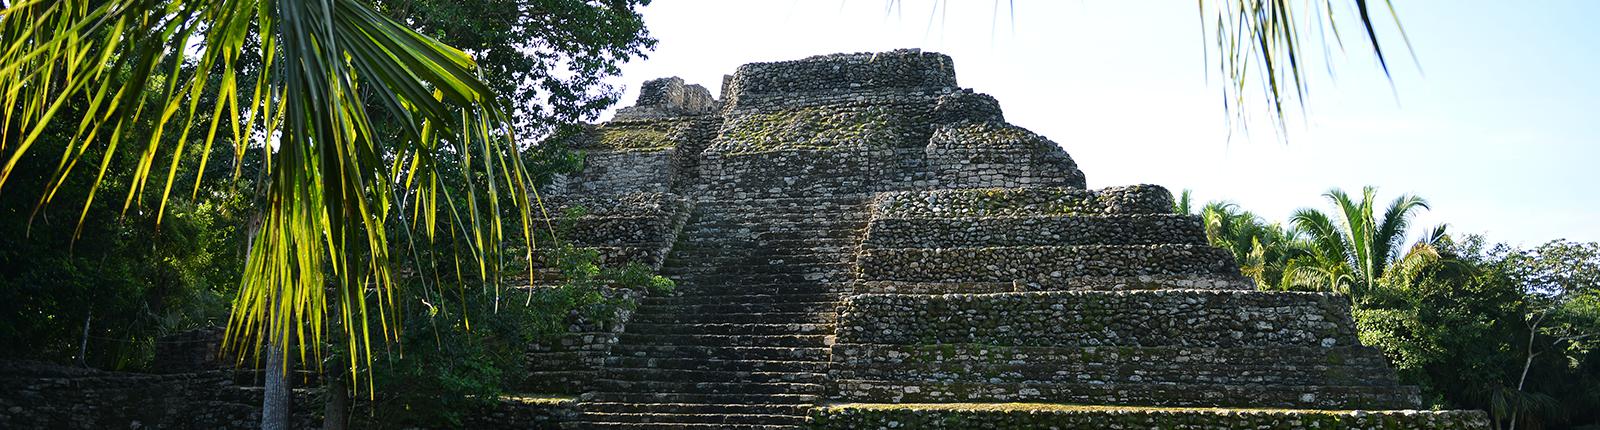 Inspiring view of the Mayan ruins from Costa Maya, Mexico